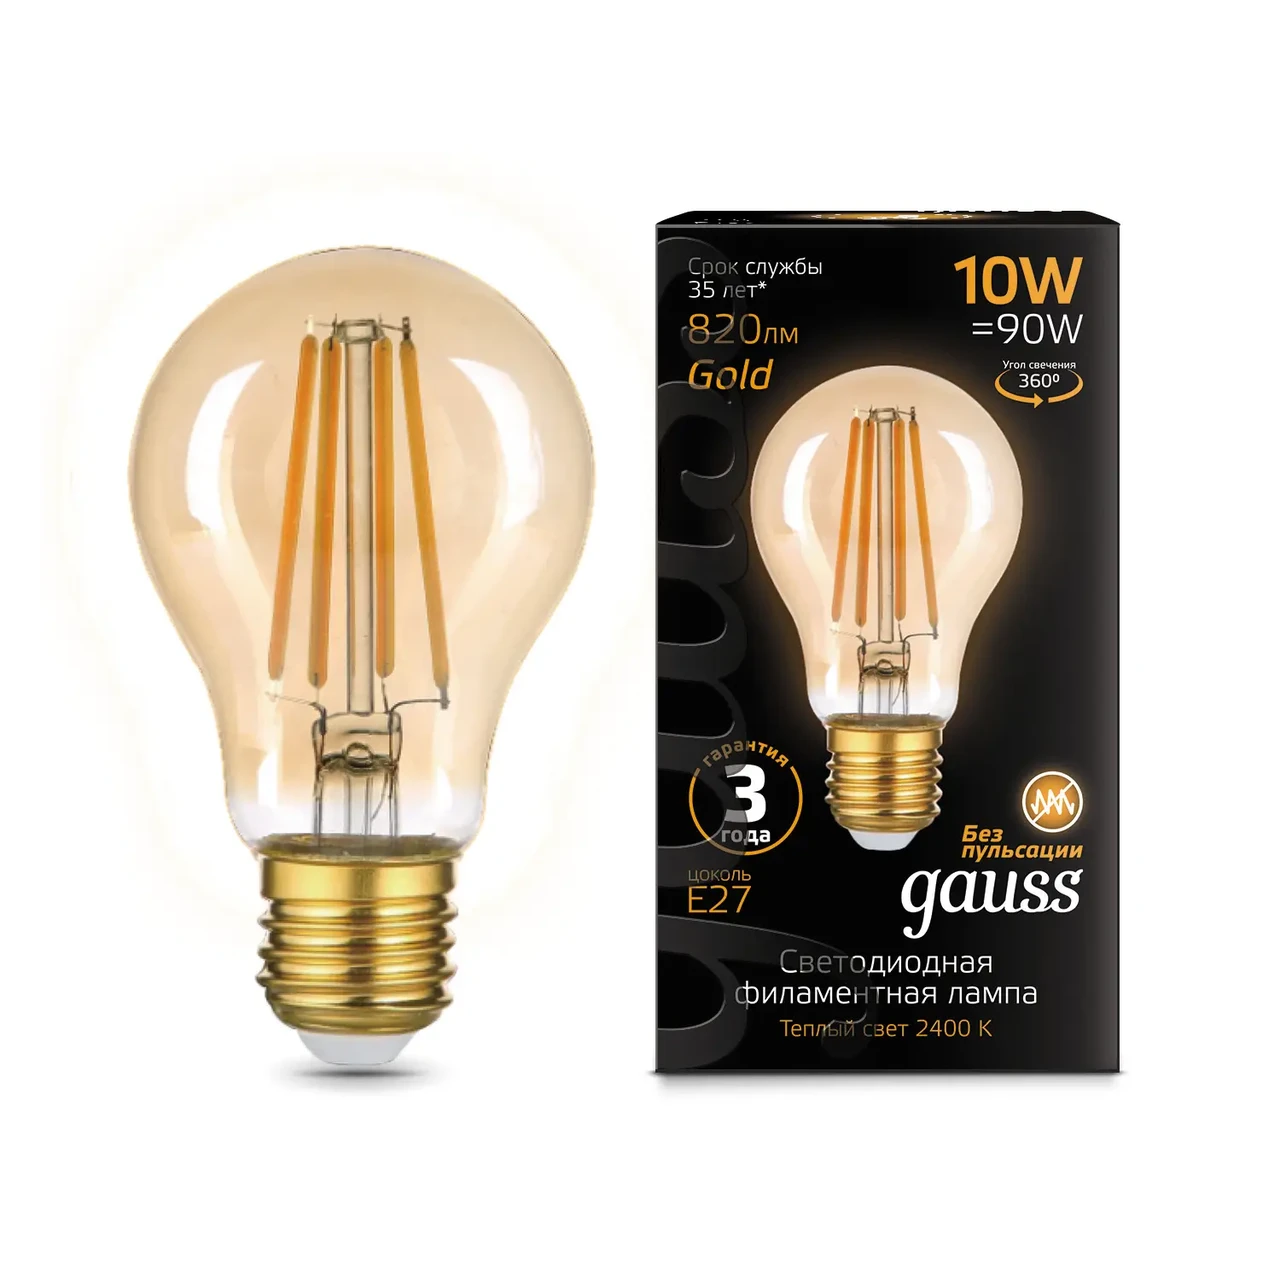 Лампа Gauss Filament А60 10W 820lm 2400К Е27 golden LED 1/10/40